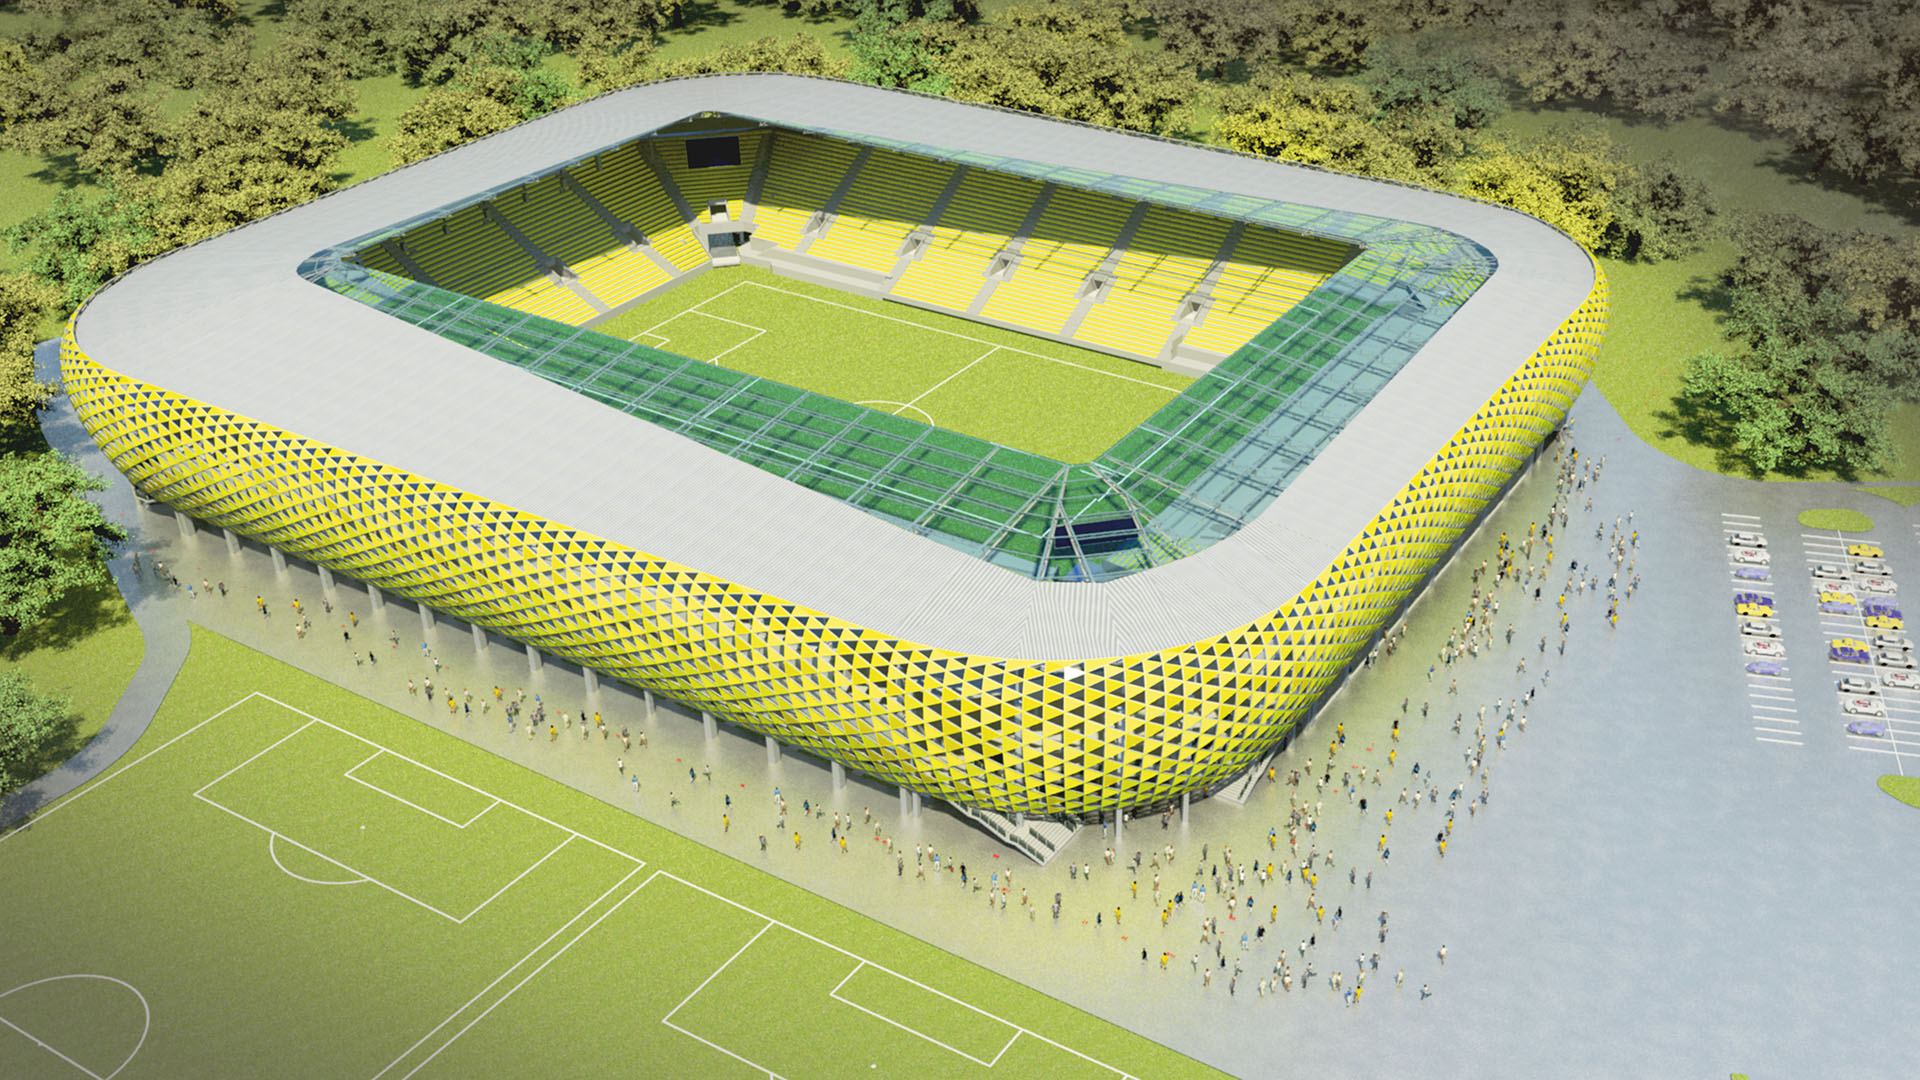 Obrazek przedtawia projekt stadionu miejskiego w Katowicach